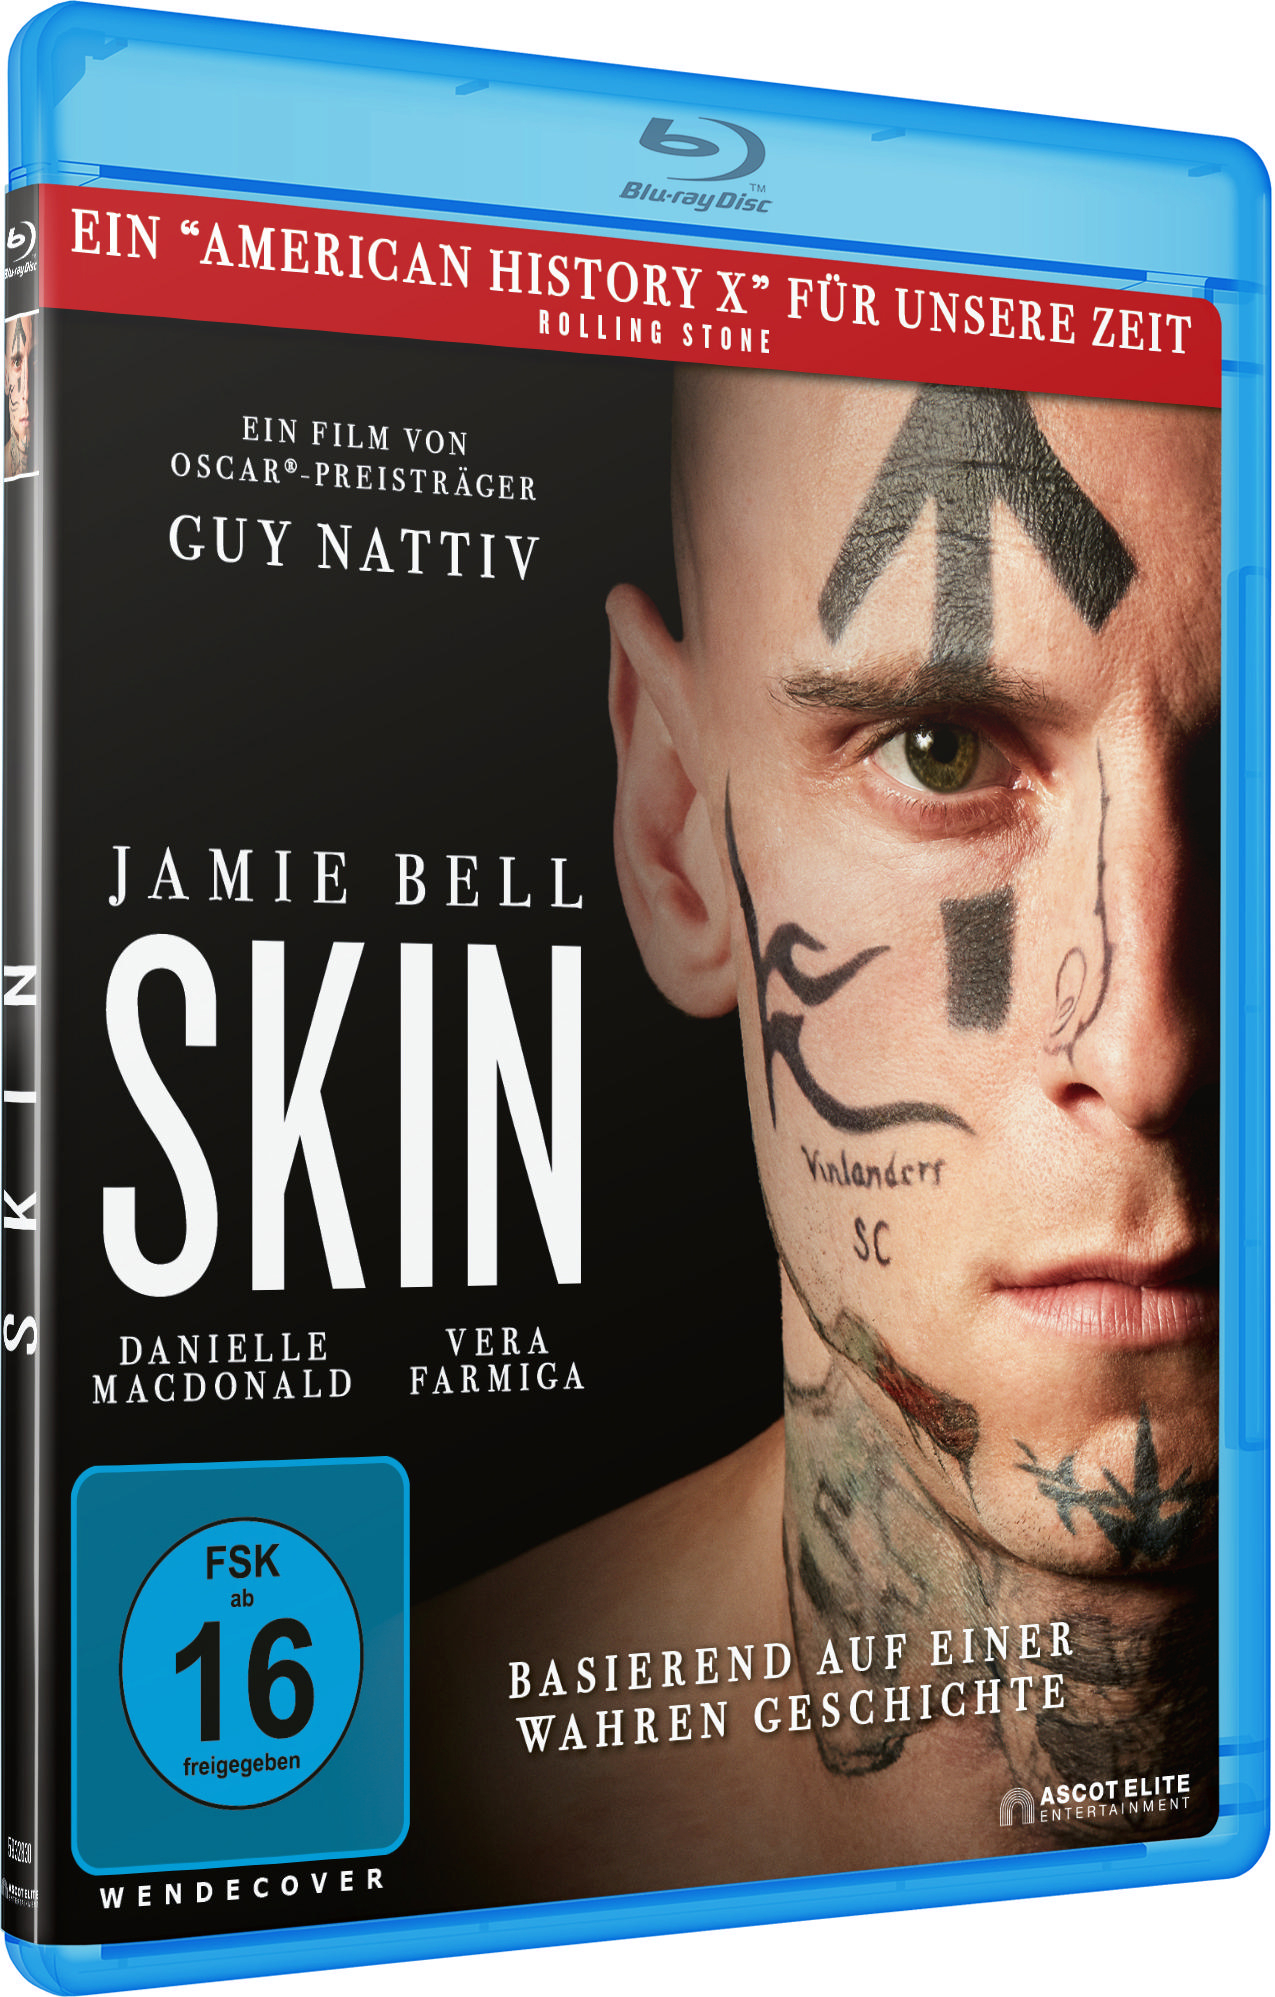 Skin Blu-ray